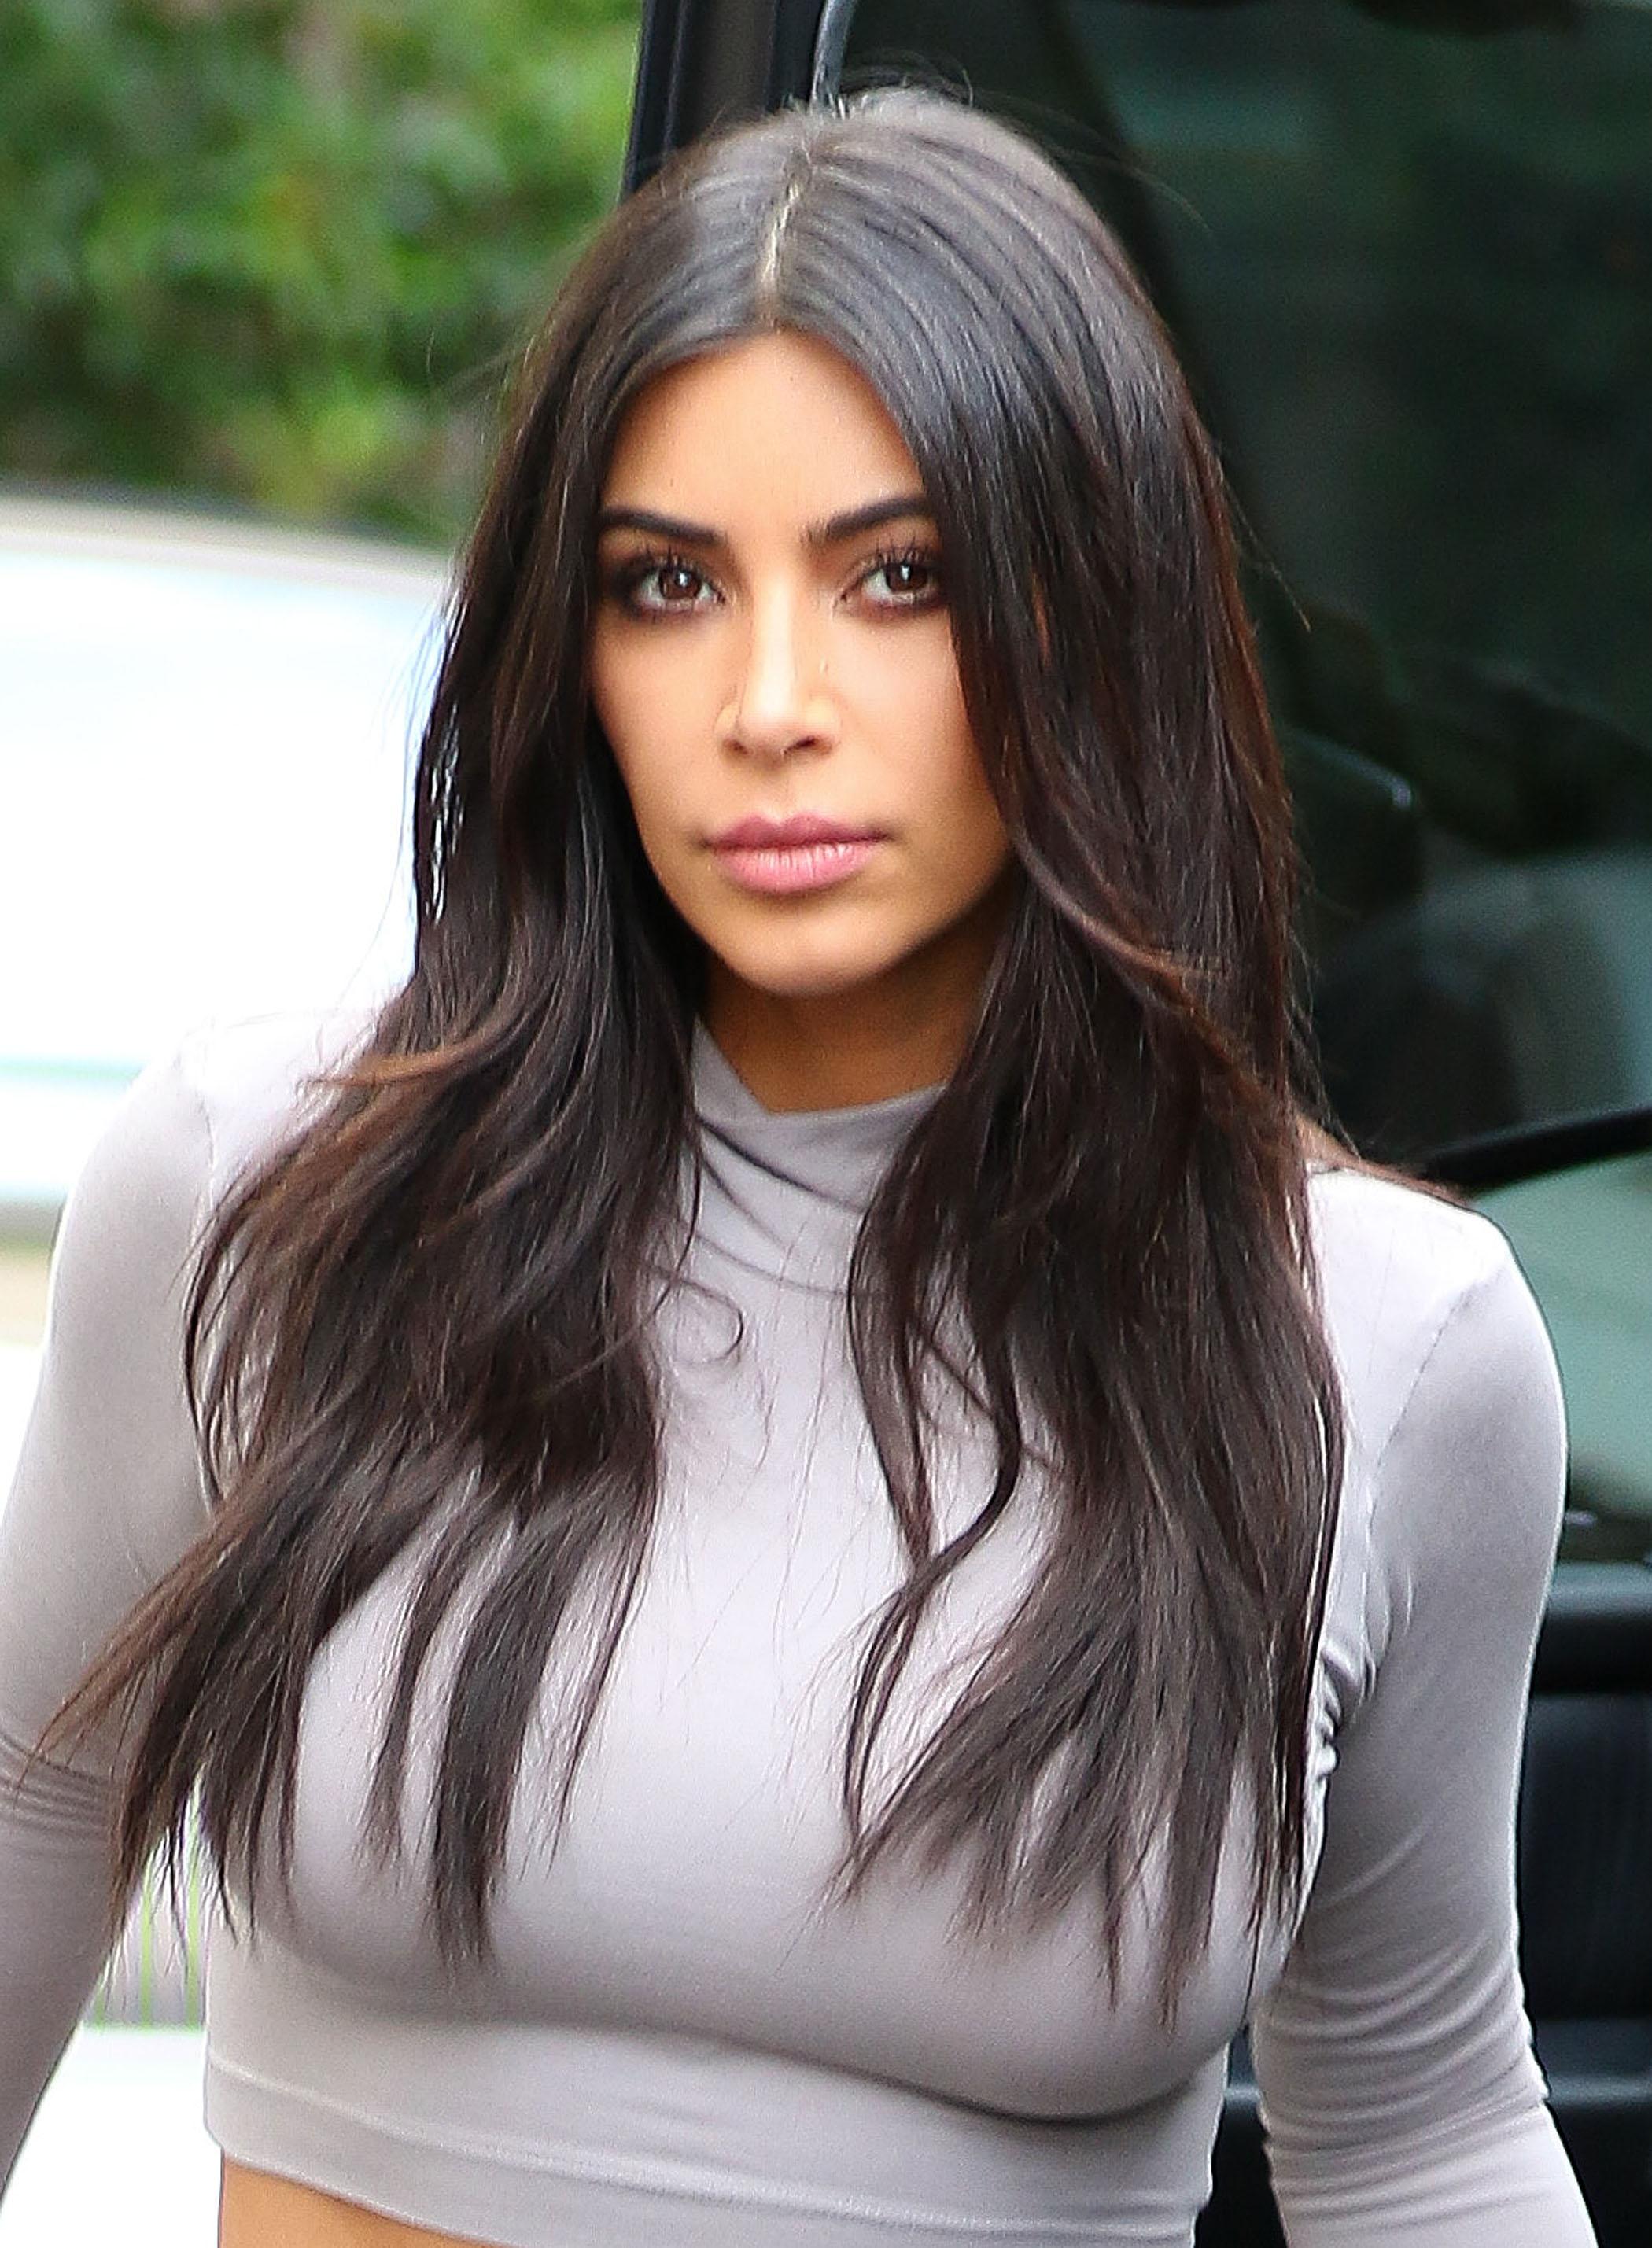 Kim Kardashian explainins why she no longer likes to smile 